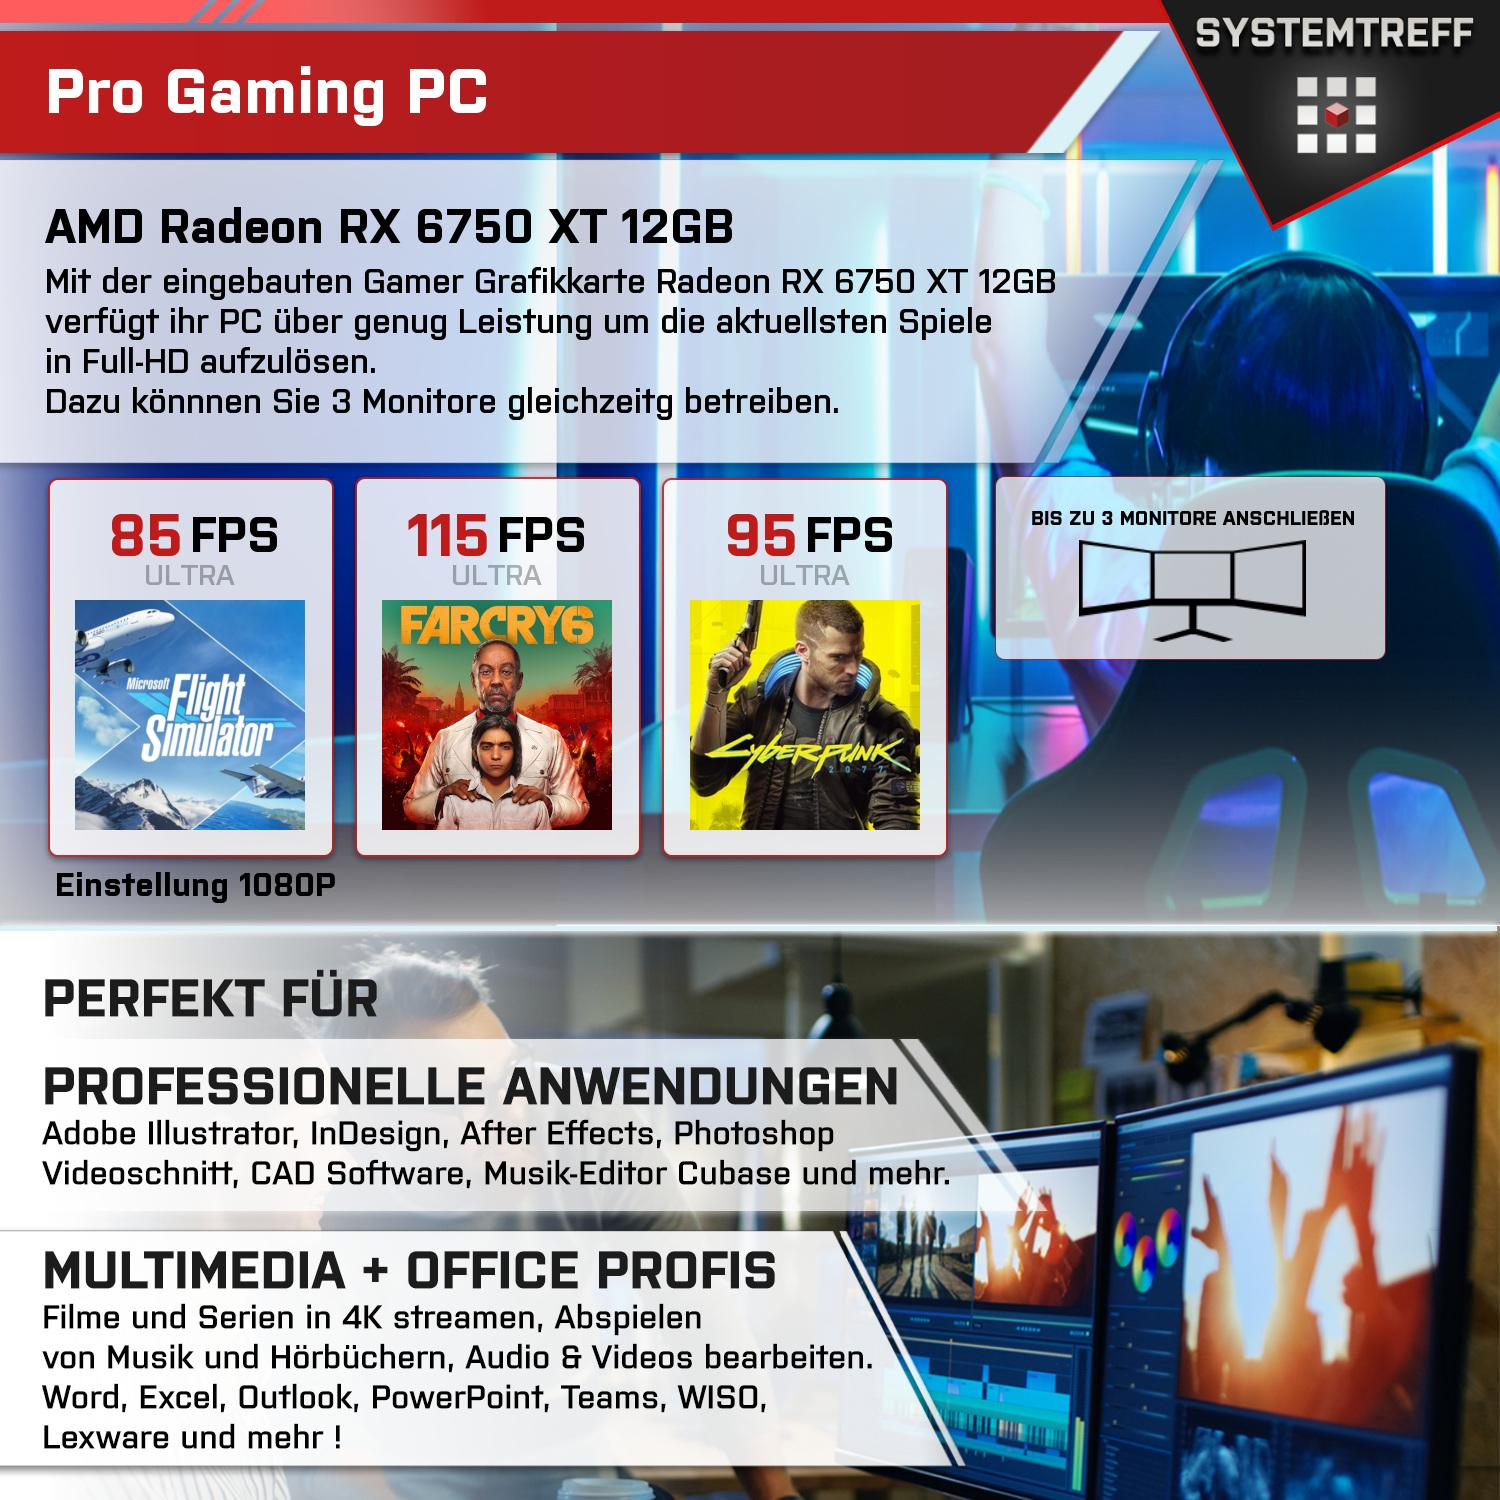 SYSTEMTREFF Gaming Komplett PC Prozessor, RX 1000 GB 7 Komplett 12GB AMD 5800X, RAM, Radeon 32 mSSD, AMD XT GB 12 GB 6750 GDDR6, mit Ryzen 5800X